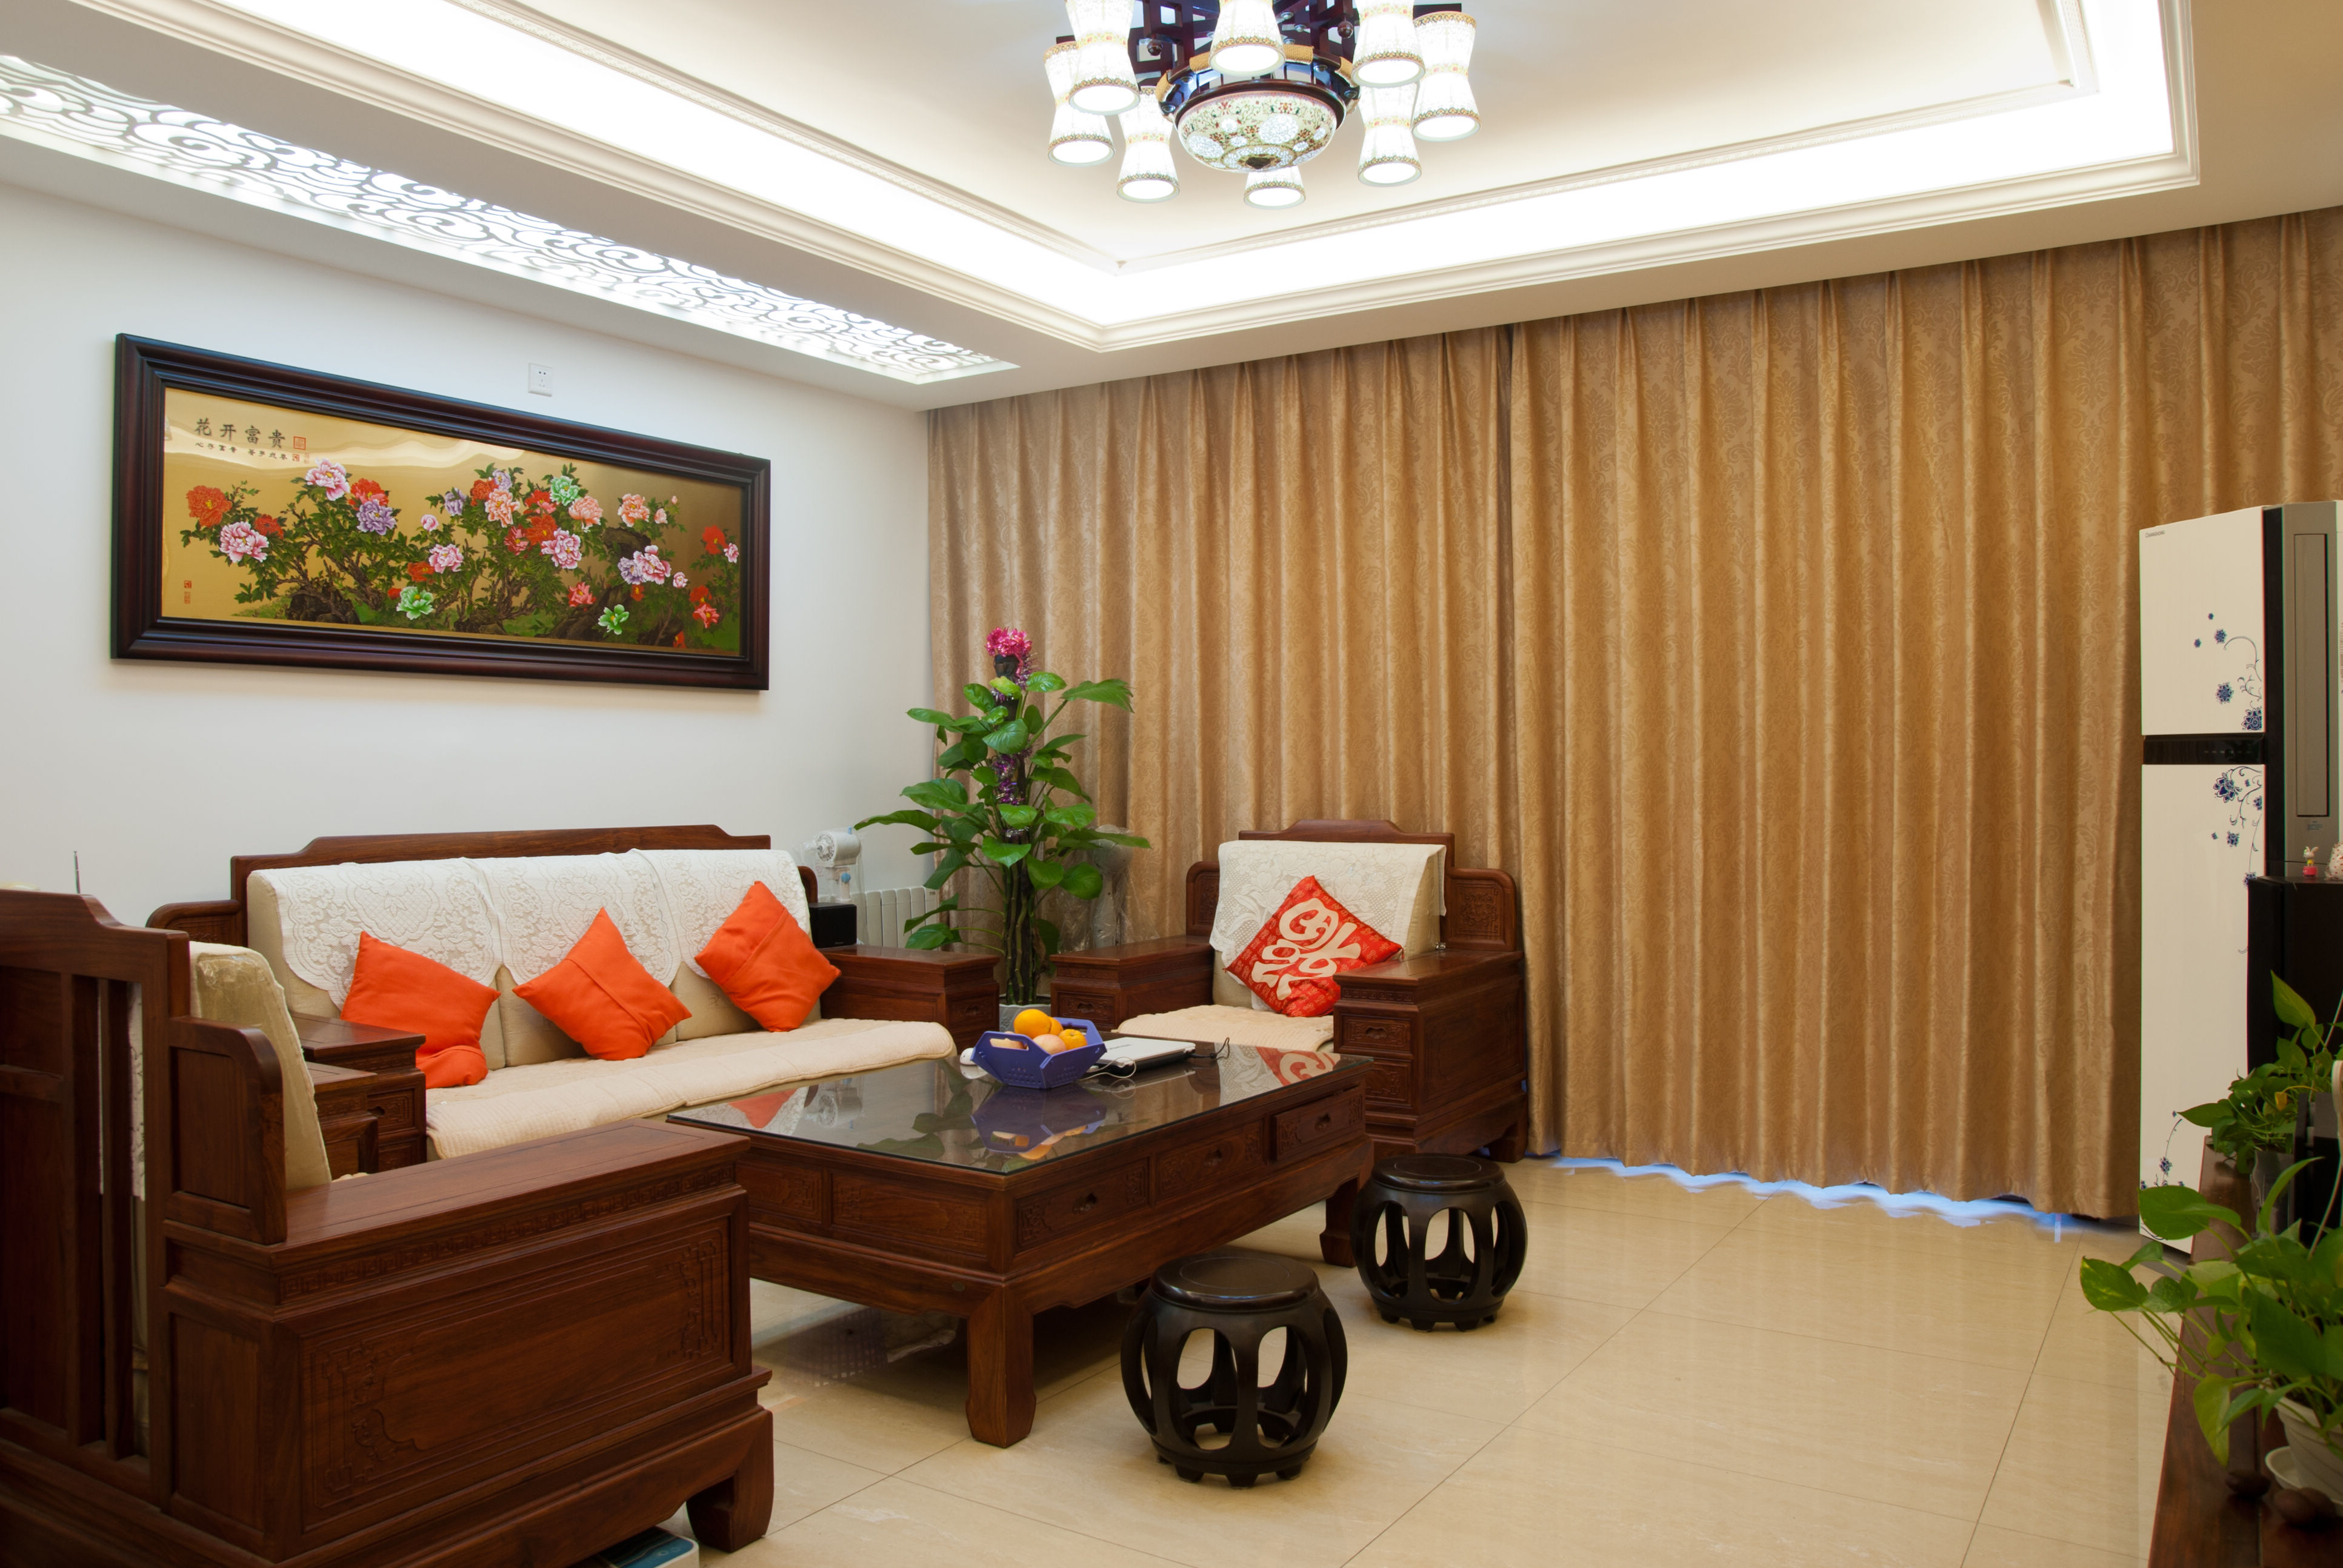 客厅图片来自成都生活家装饰徐洋在返古溯源144平米中式风格的分享